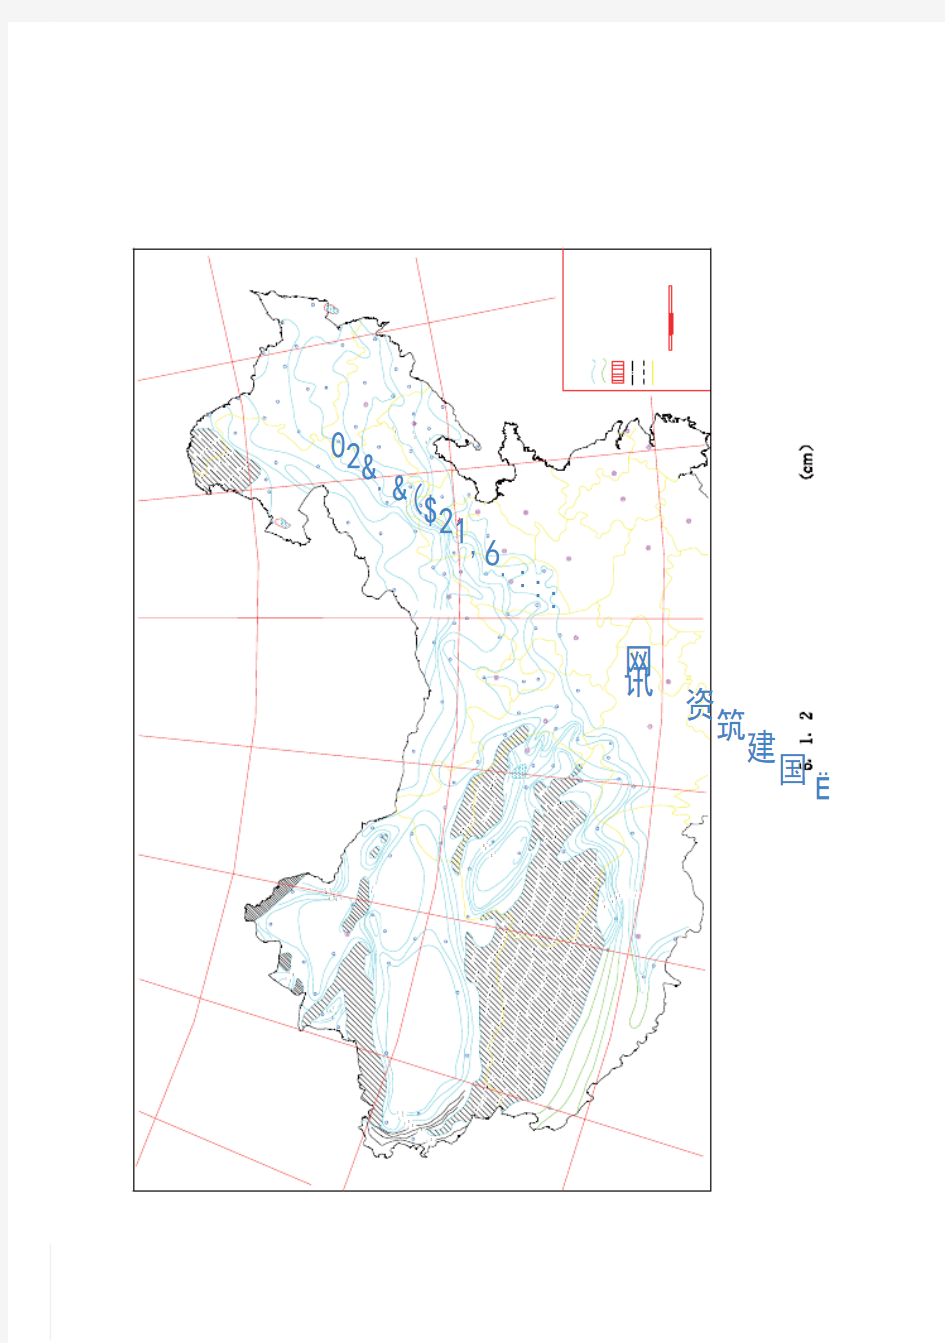 冻土地区建筑地基基础设计规范-图5.1.2中国季节性冻土标准冻深图(位图)